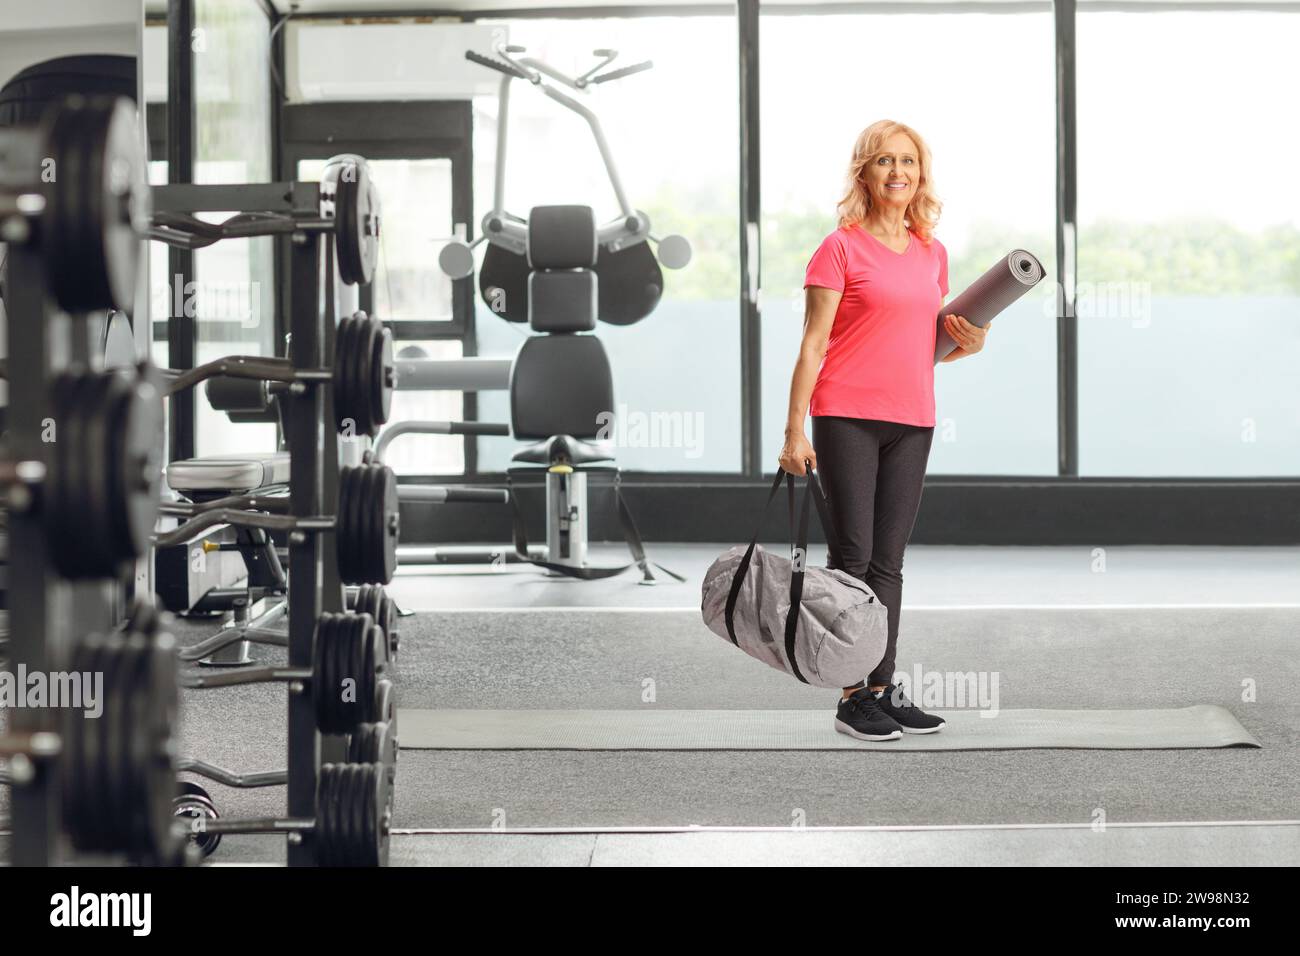 Lächelnde Frau mittleren Alters in Sportbekleidung, die im Fitnessstudio eine Tasche und eine Trainingsmatte hält Stockfoto